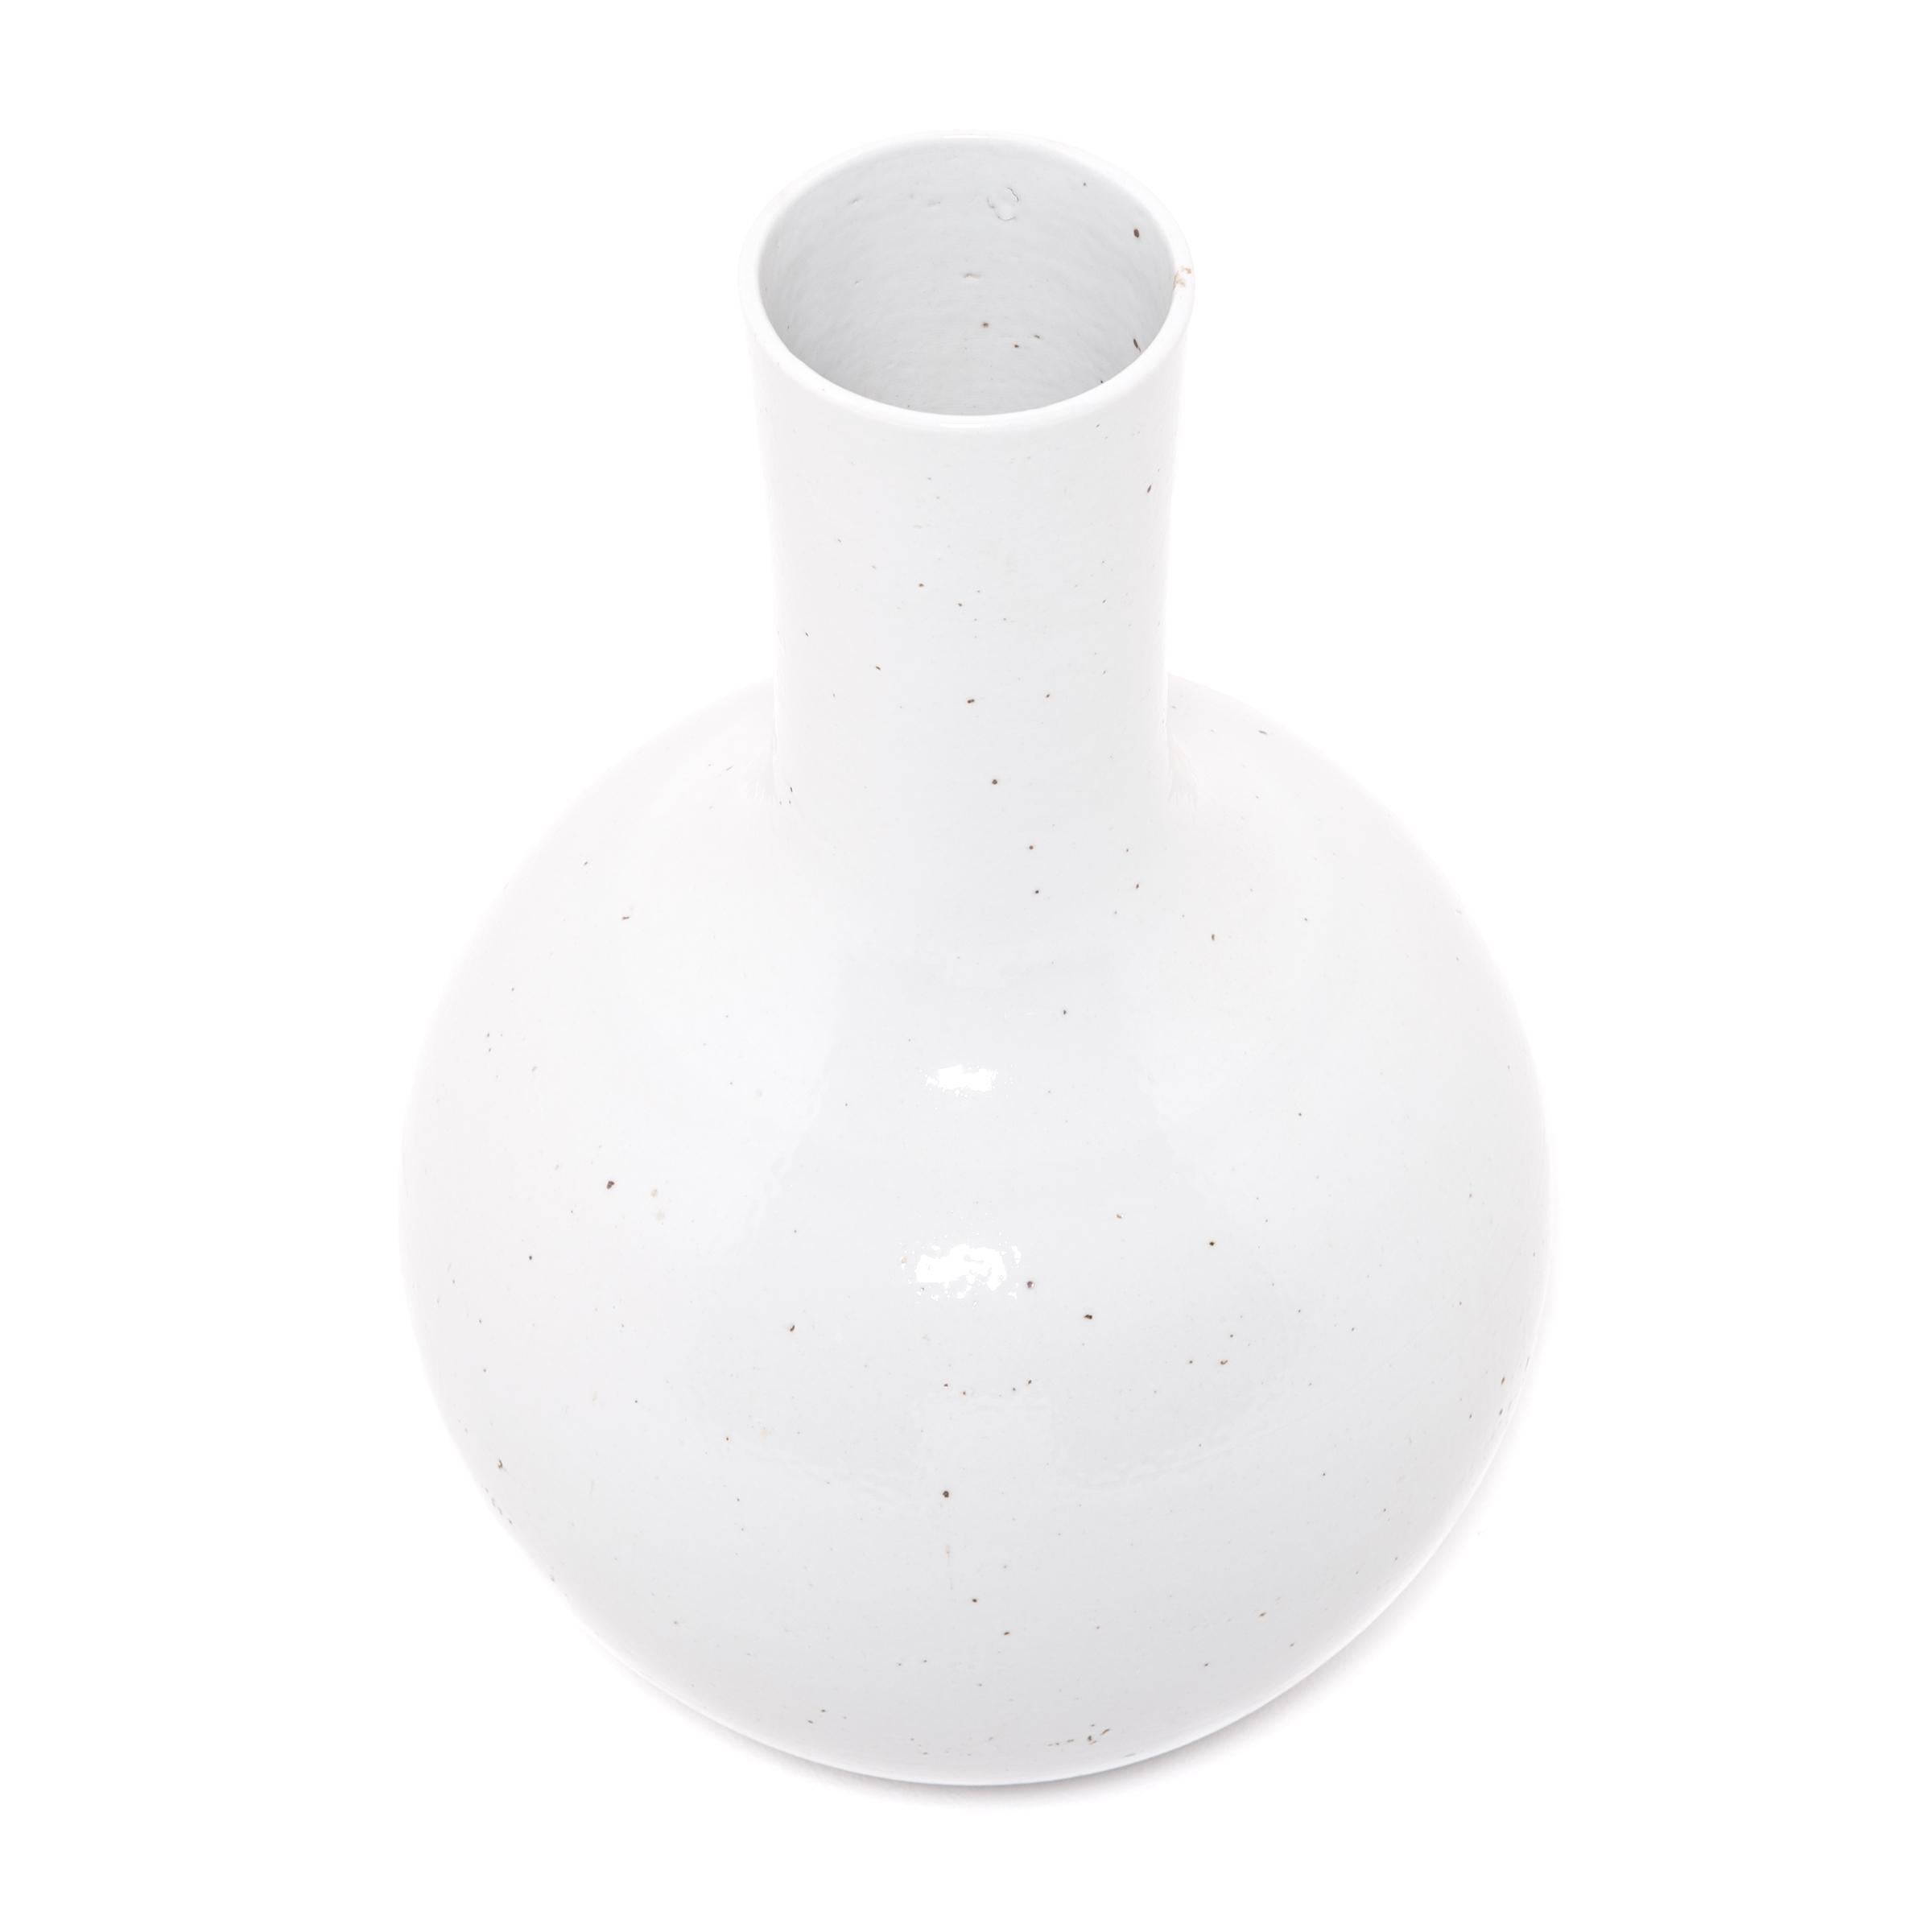 In Anlehnung an die lange chinesische Tradition monochromer Keramik ist diese schlichte Vase mit langem Hals in einem ruhigen, von Wolken inspirierten Weiß glasiert. Die in der Provinz Zhejiang gefertigten Keramiker haben diese sehr traditionelle